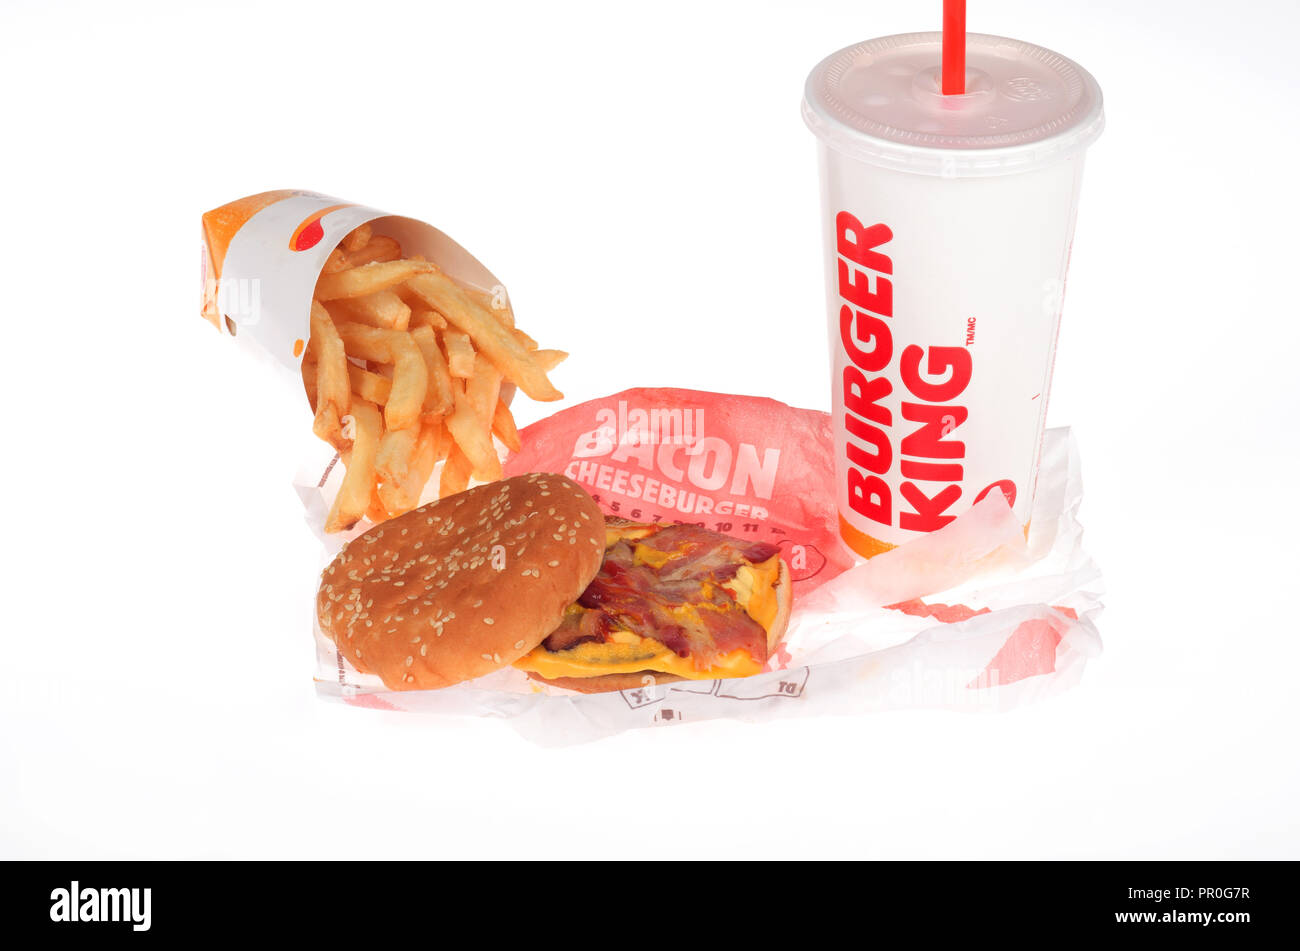 Burger essen mit Bacon Cheeseburger, Pommes frites oder Chips und eine Limo auf weißem Hintergrund Stockfoto